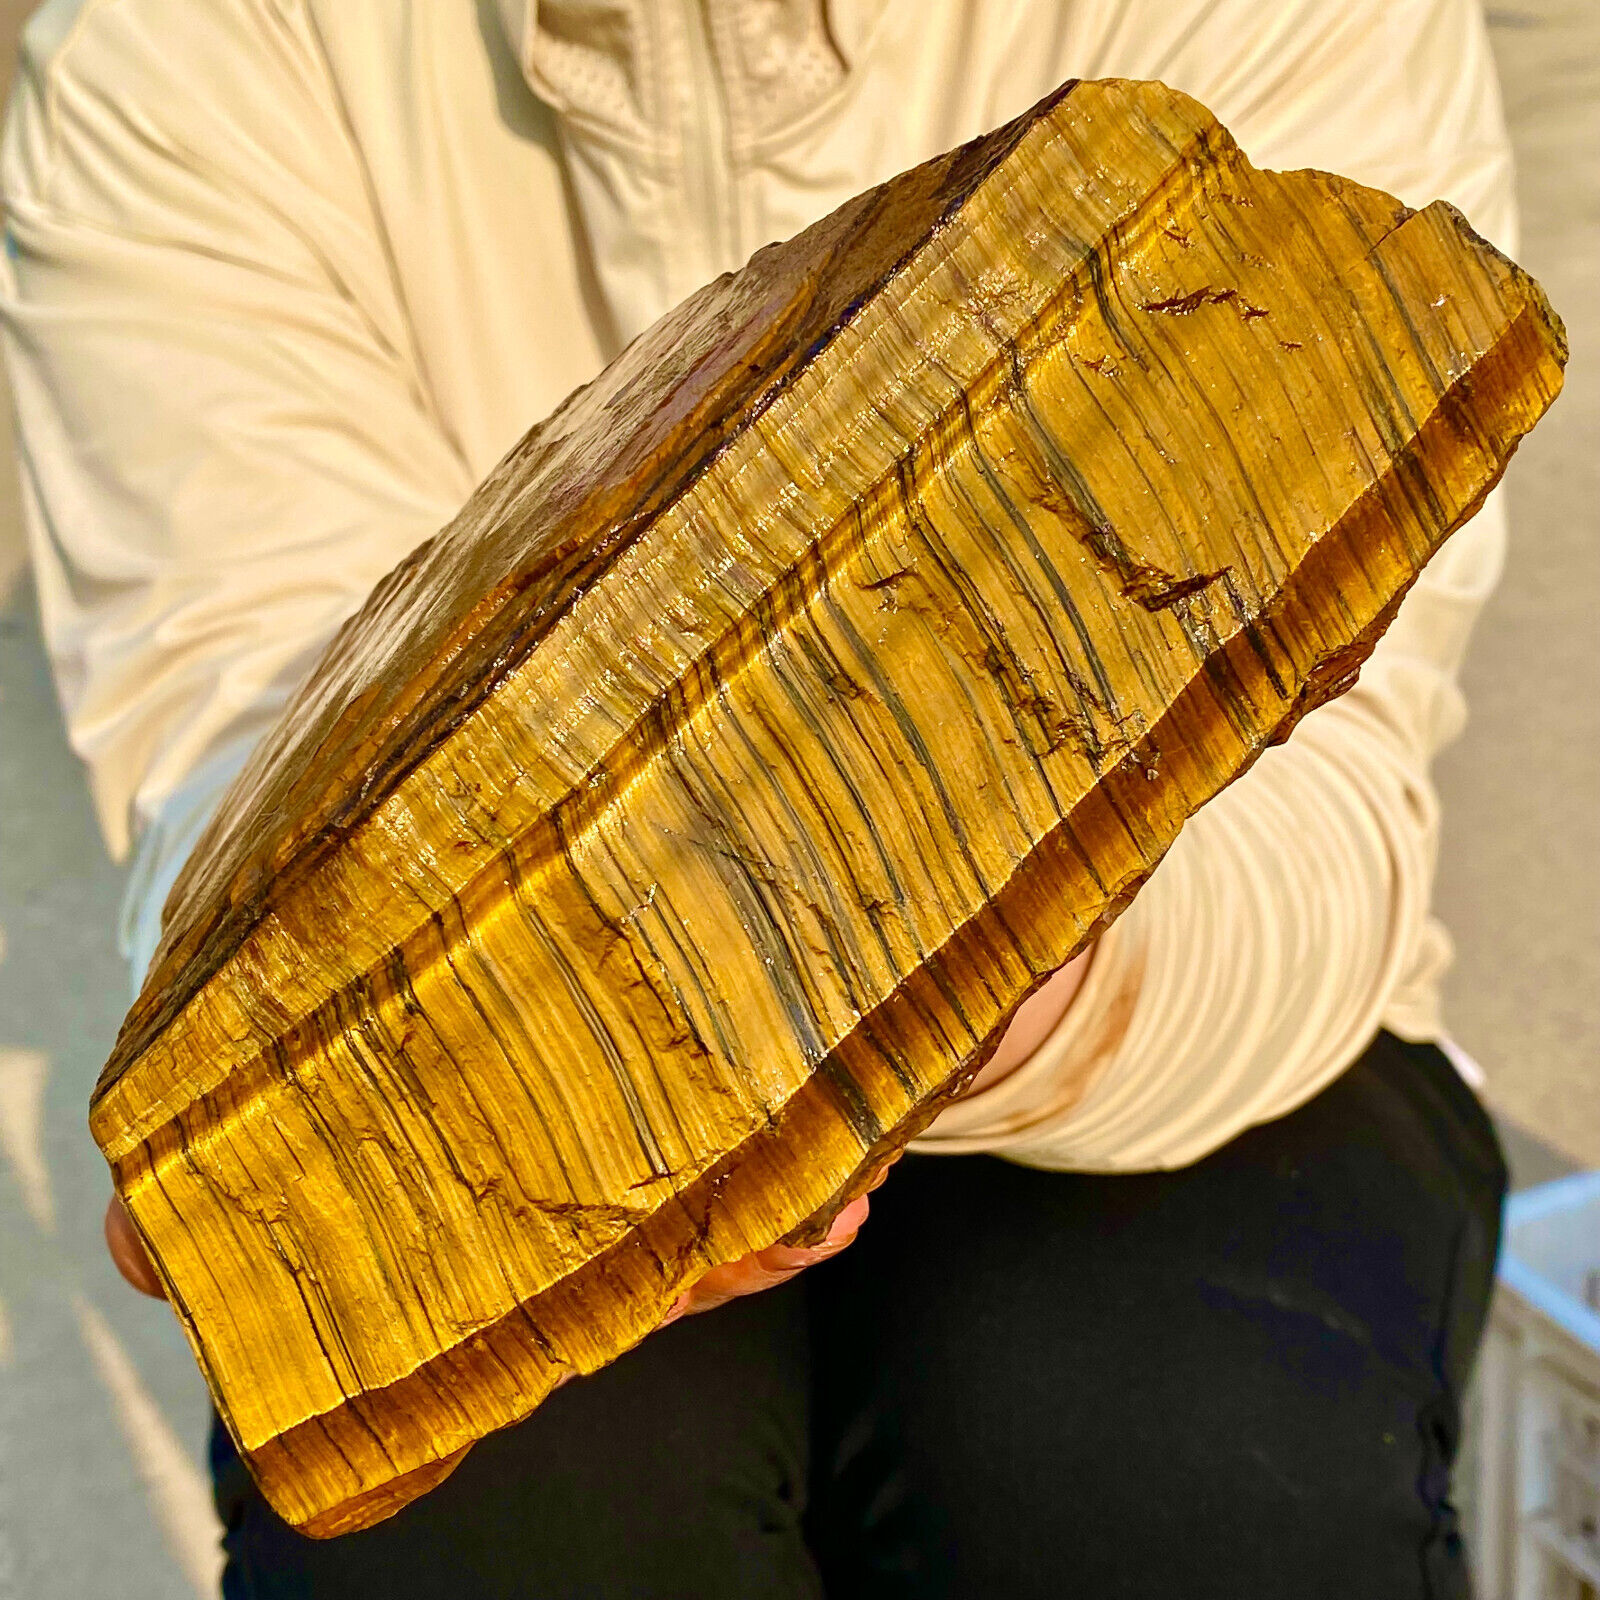 6.1LB Large Golden Tiger'S Eye Rock Quartz Crystal Mineral Specimen Metaphysics